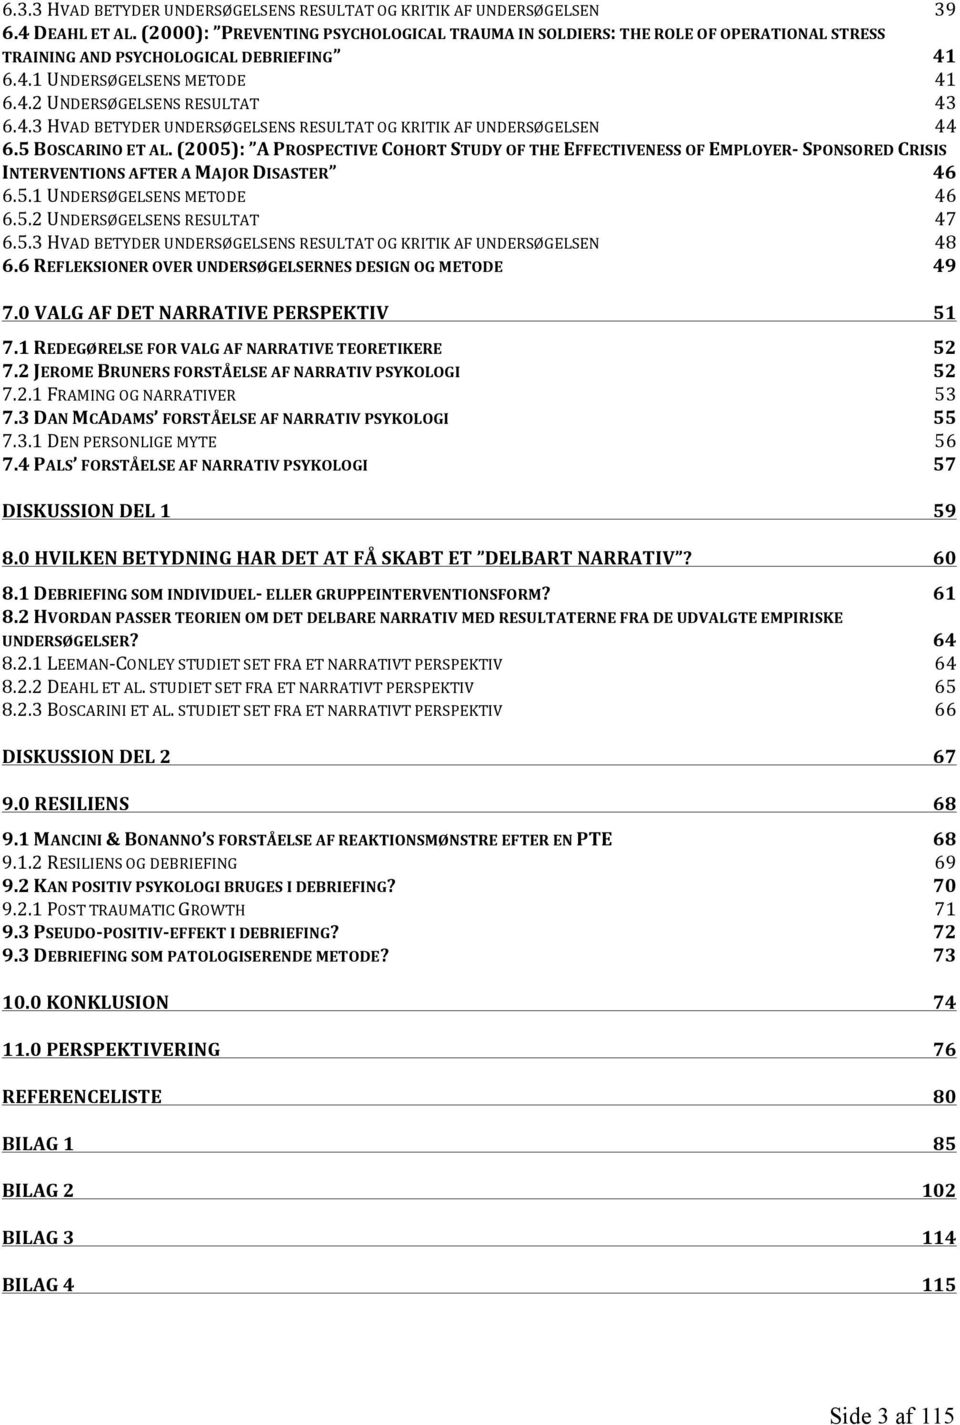 5 BOSCARINO ET AL. (2005): A PROSPECTIVE COHORT STUDY OF THE EFFECTIVENESS OF EMPLOYER- SPONSORED CRISIS INTERVENTIONS AFTER A MAJOR DISASTER 46 6.5.1 UNDERSØGELSENS METODE 46 6.5.2 UNDERSØGELSENS RESULTAT 47 6.